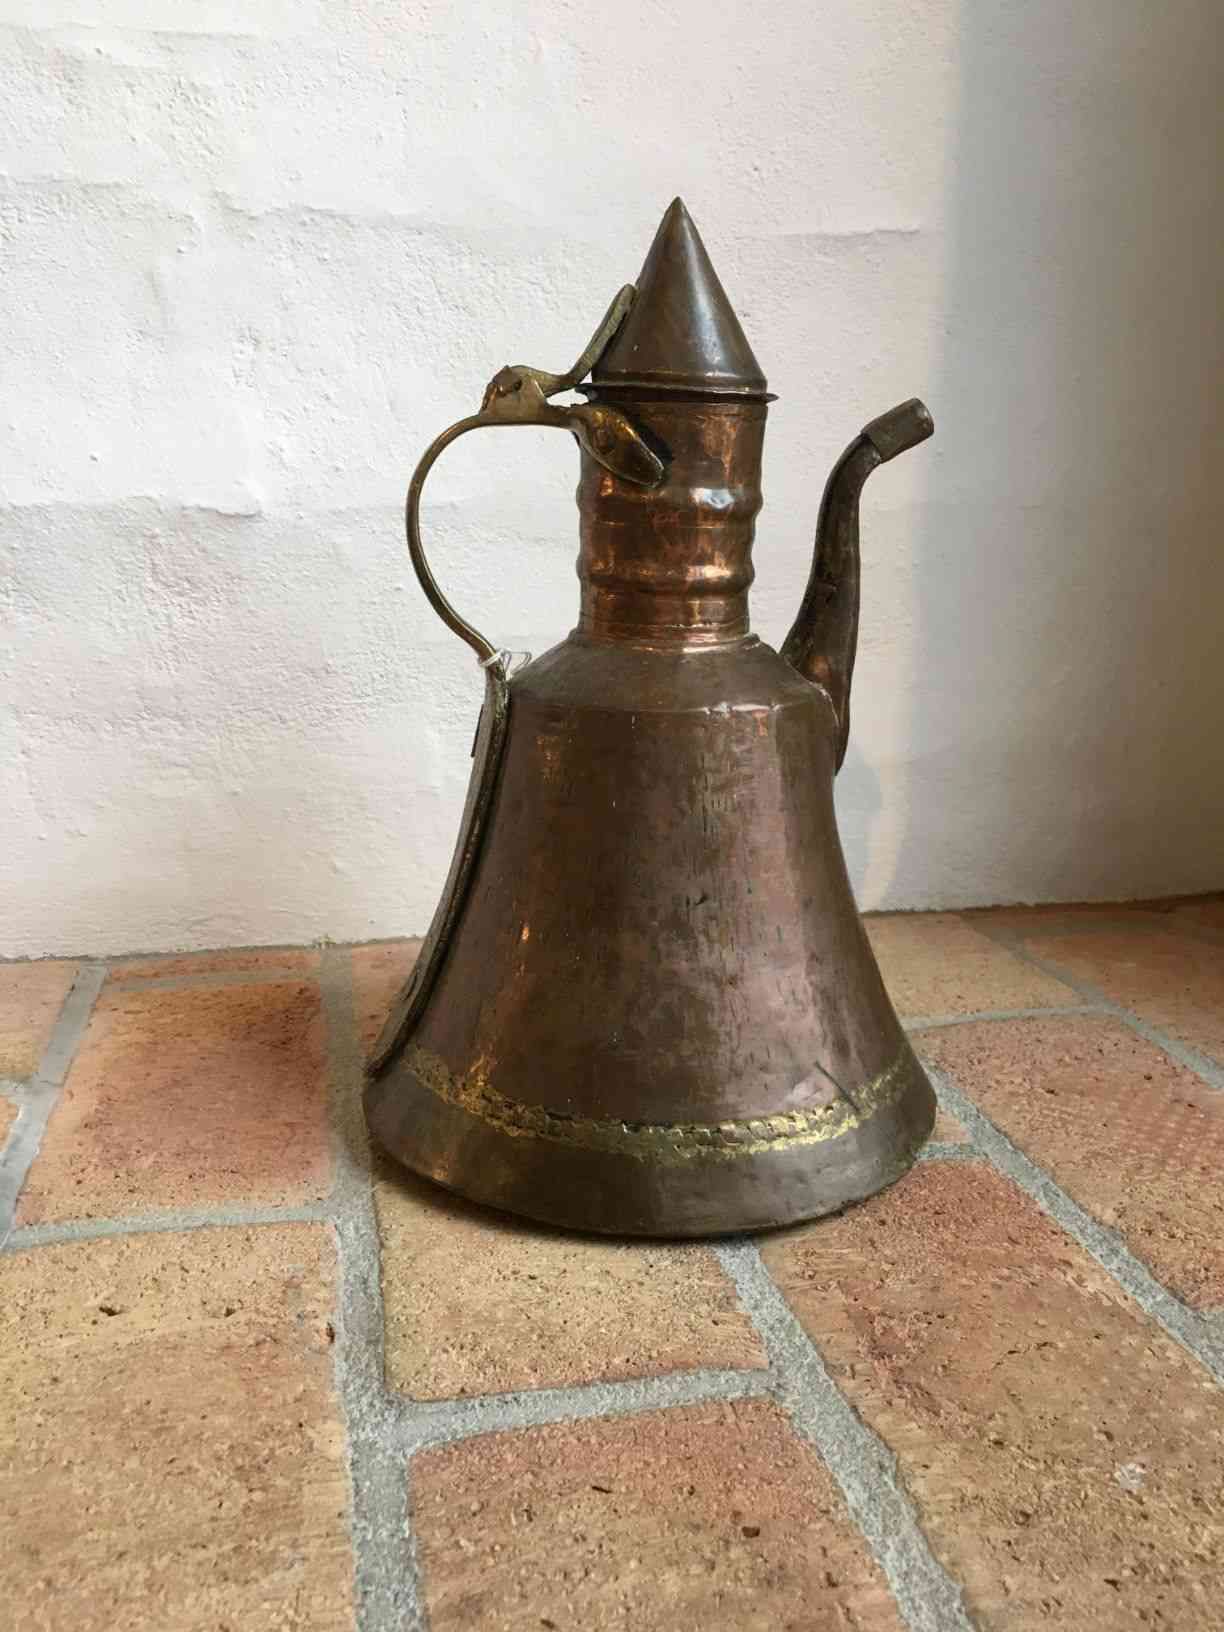 Antik Mellemøstlig, arabisk / tyrkisk hamret kobber Dallah / kaffekande. Den er sandsynlig fremstillet mellem 1850-1899 og er et fantastisk eksempel på gammel persisk islamisk vand- og kaffekande i kobber og messing. Det er en antik og stor kobberbelagt kande, som kan bruges til te, kaffe, vandkogning eller som en dekorativ vase. Den har en flot håndlavet udformning med detaljer, men bemærk, at den er gammel og primitiv med patina og overfladiske mærker, buler og skævheder, der giver den en autentisk følelse. Pris: 350,- Kr.